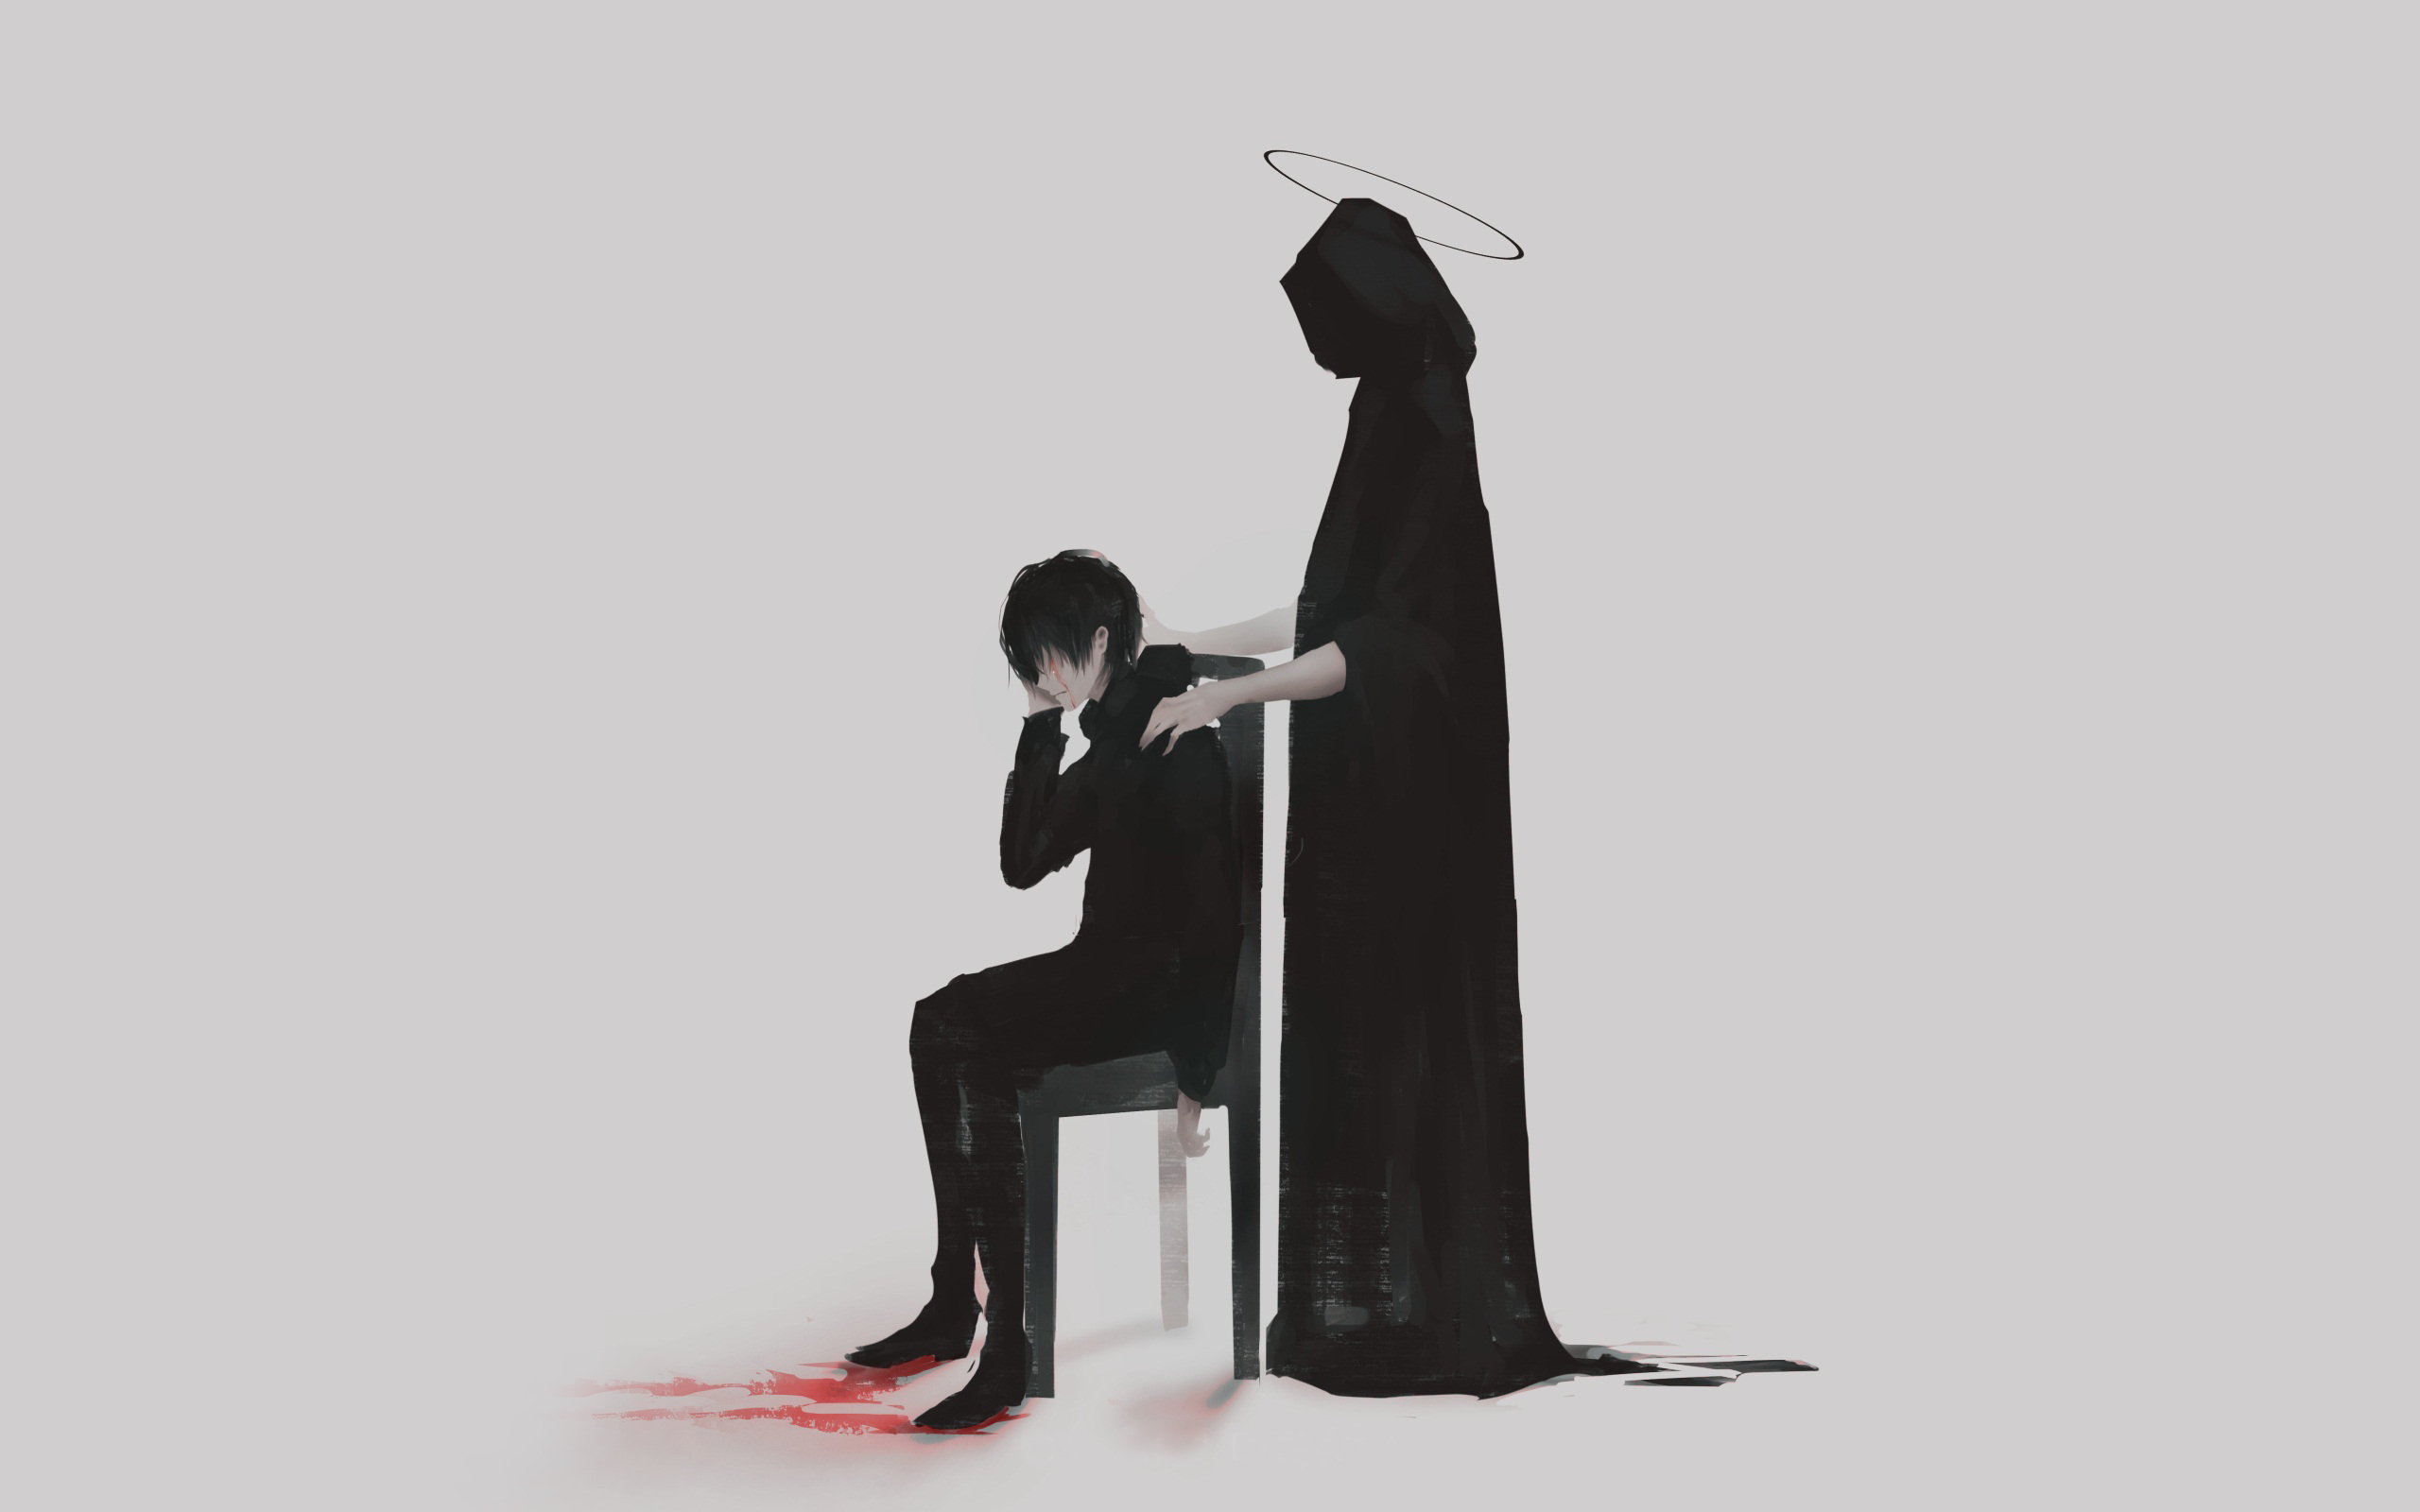 Anime 2560x1600 blood simple background Aoi Ogata artwork black clothing sitting crying gray background Tunic